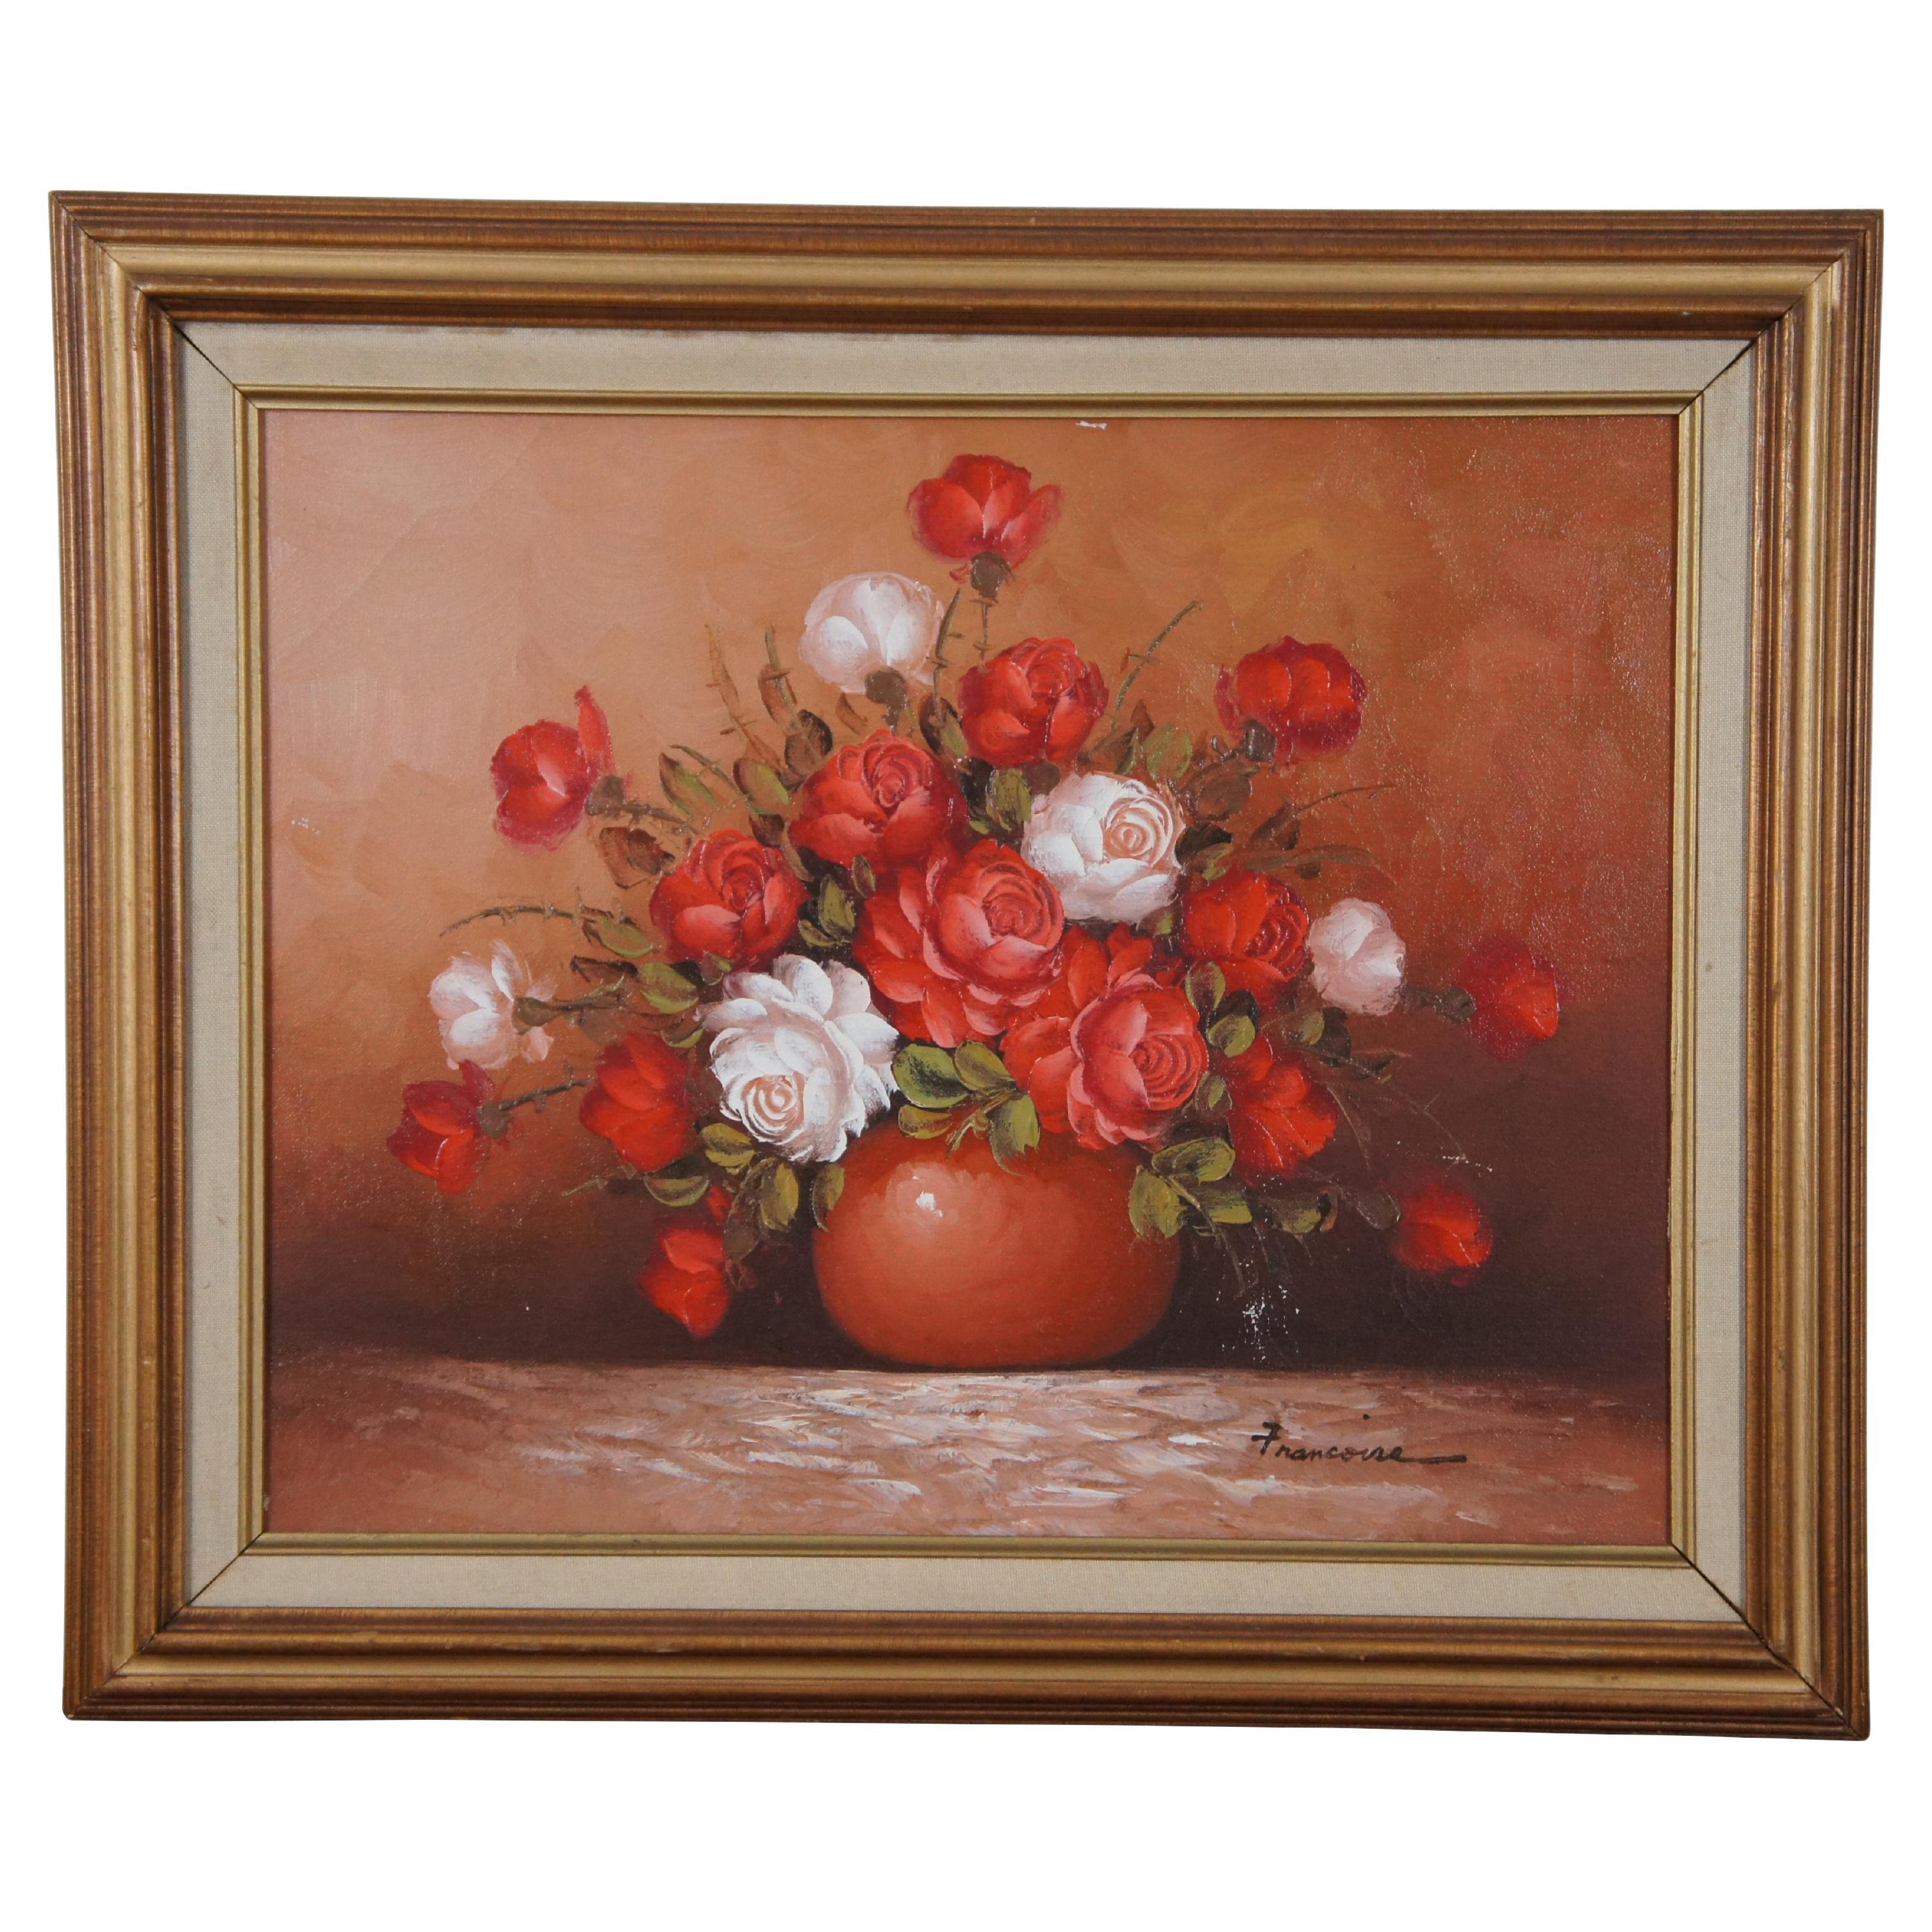 Vintage Francoise Red & White Roses Still Life Oil Painting on Canvas 25" (peinture à l'huile sur toile) en vente